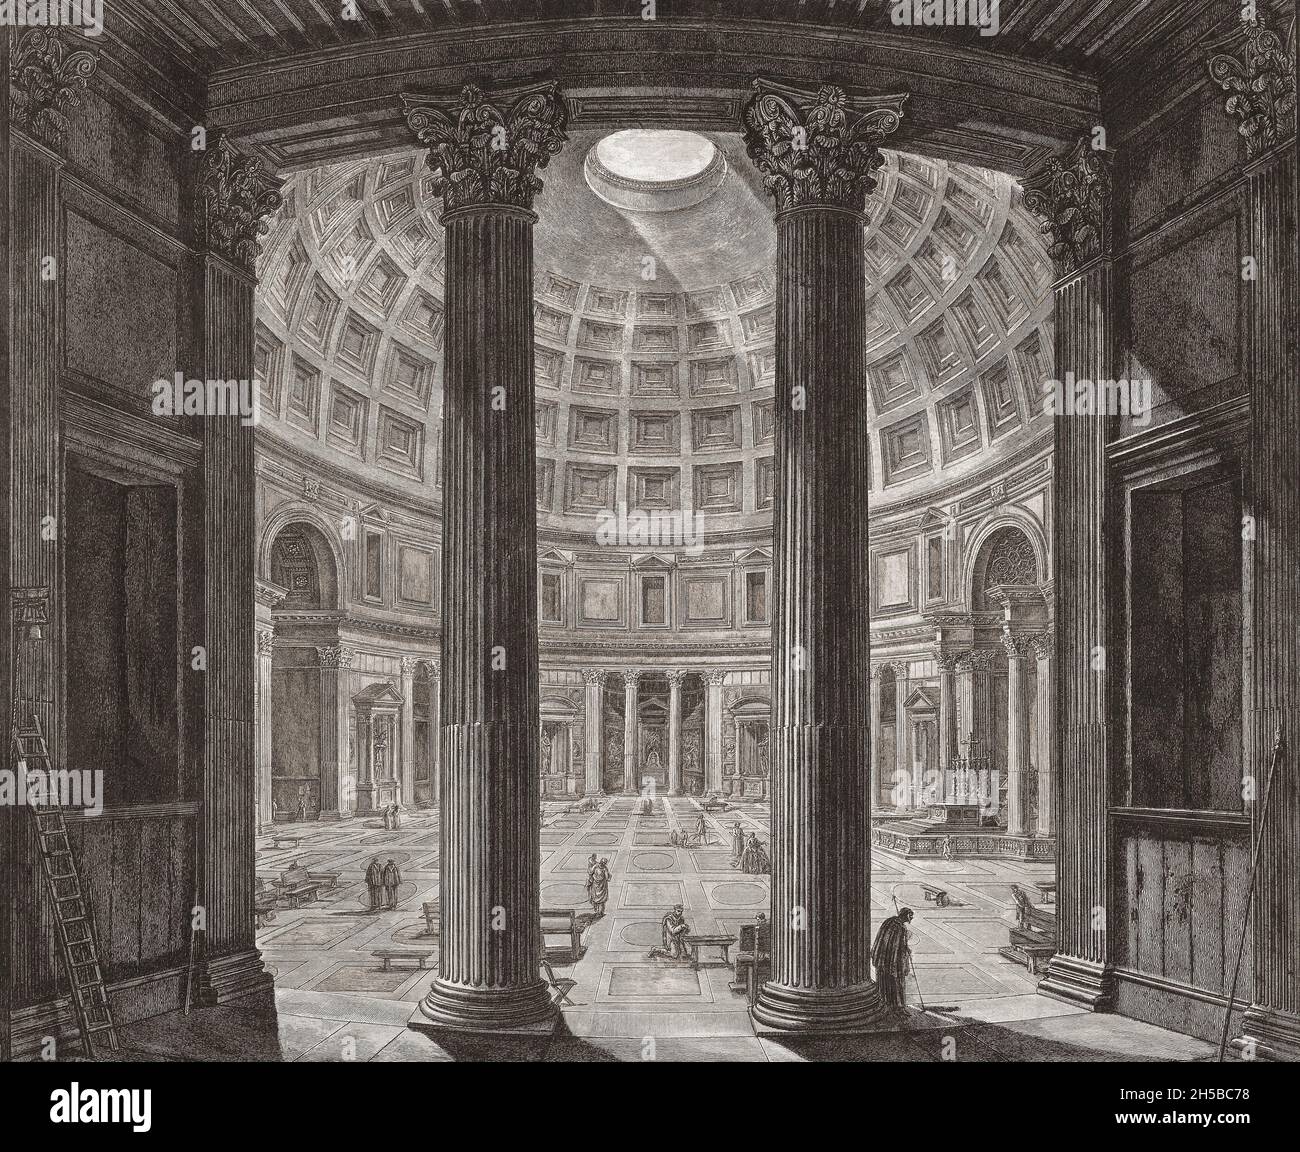 Der Innenraum des Pantheons, Rom, Italien. Nach einem Werk von Giovanni Battista Piranesi aus dem 18. Jahrhundert. Stockfoto